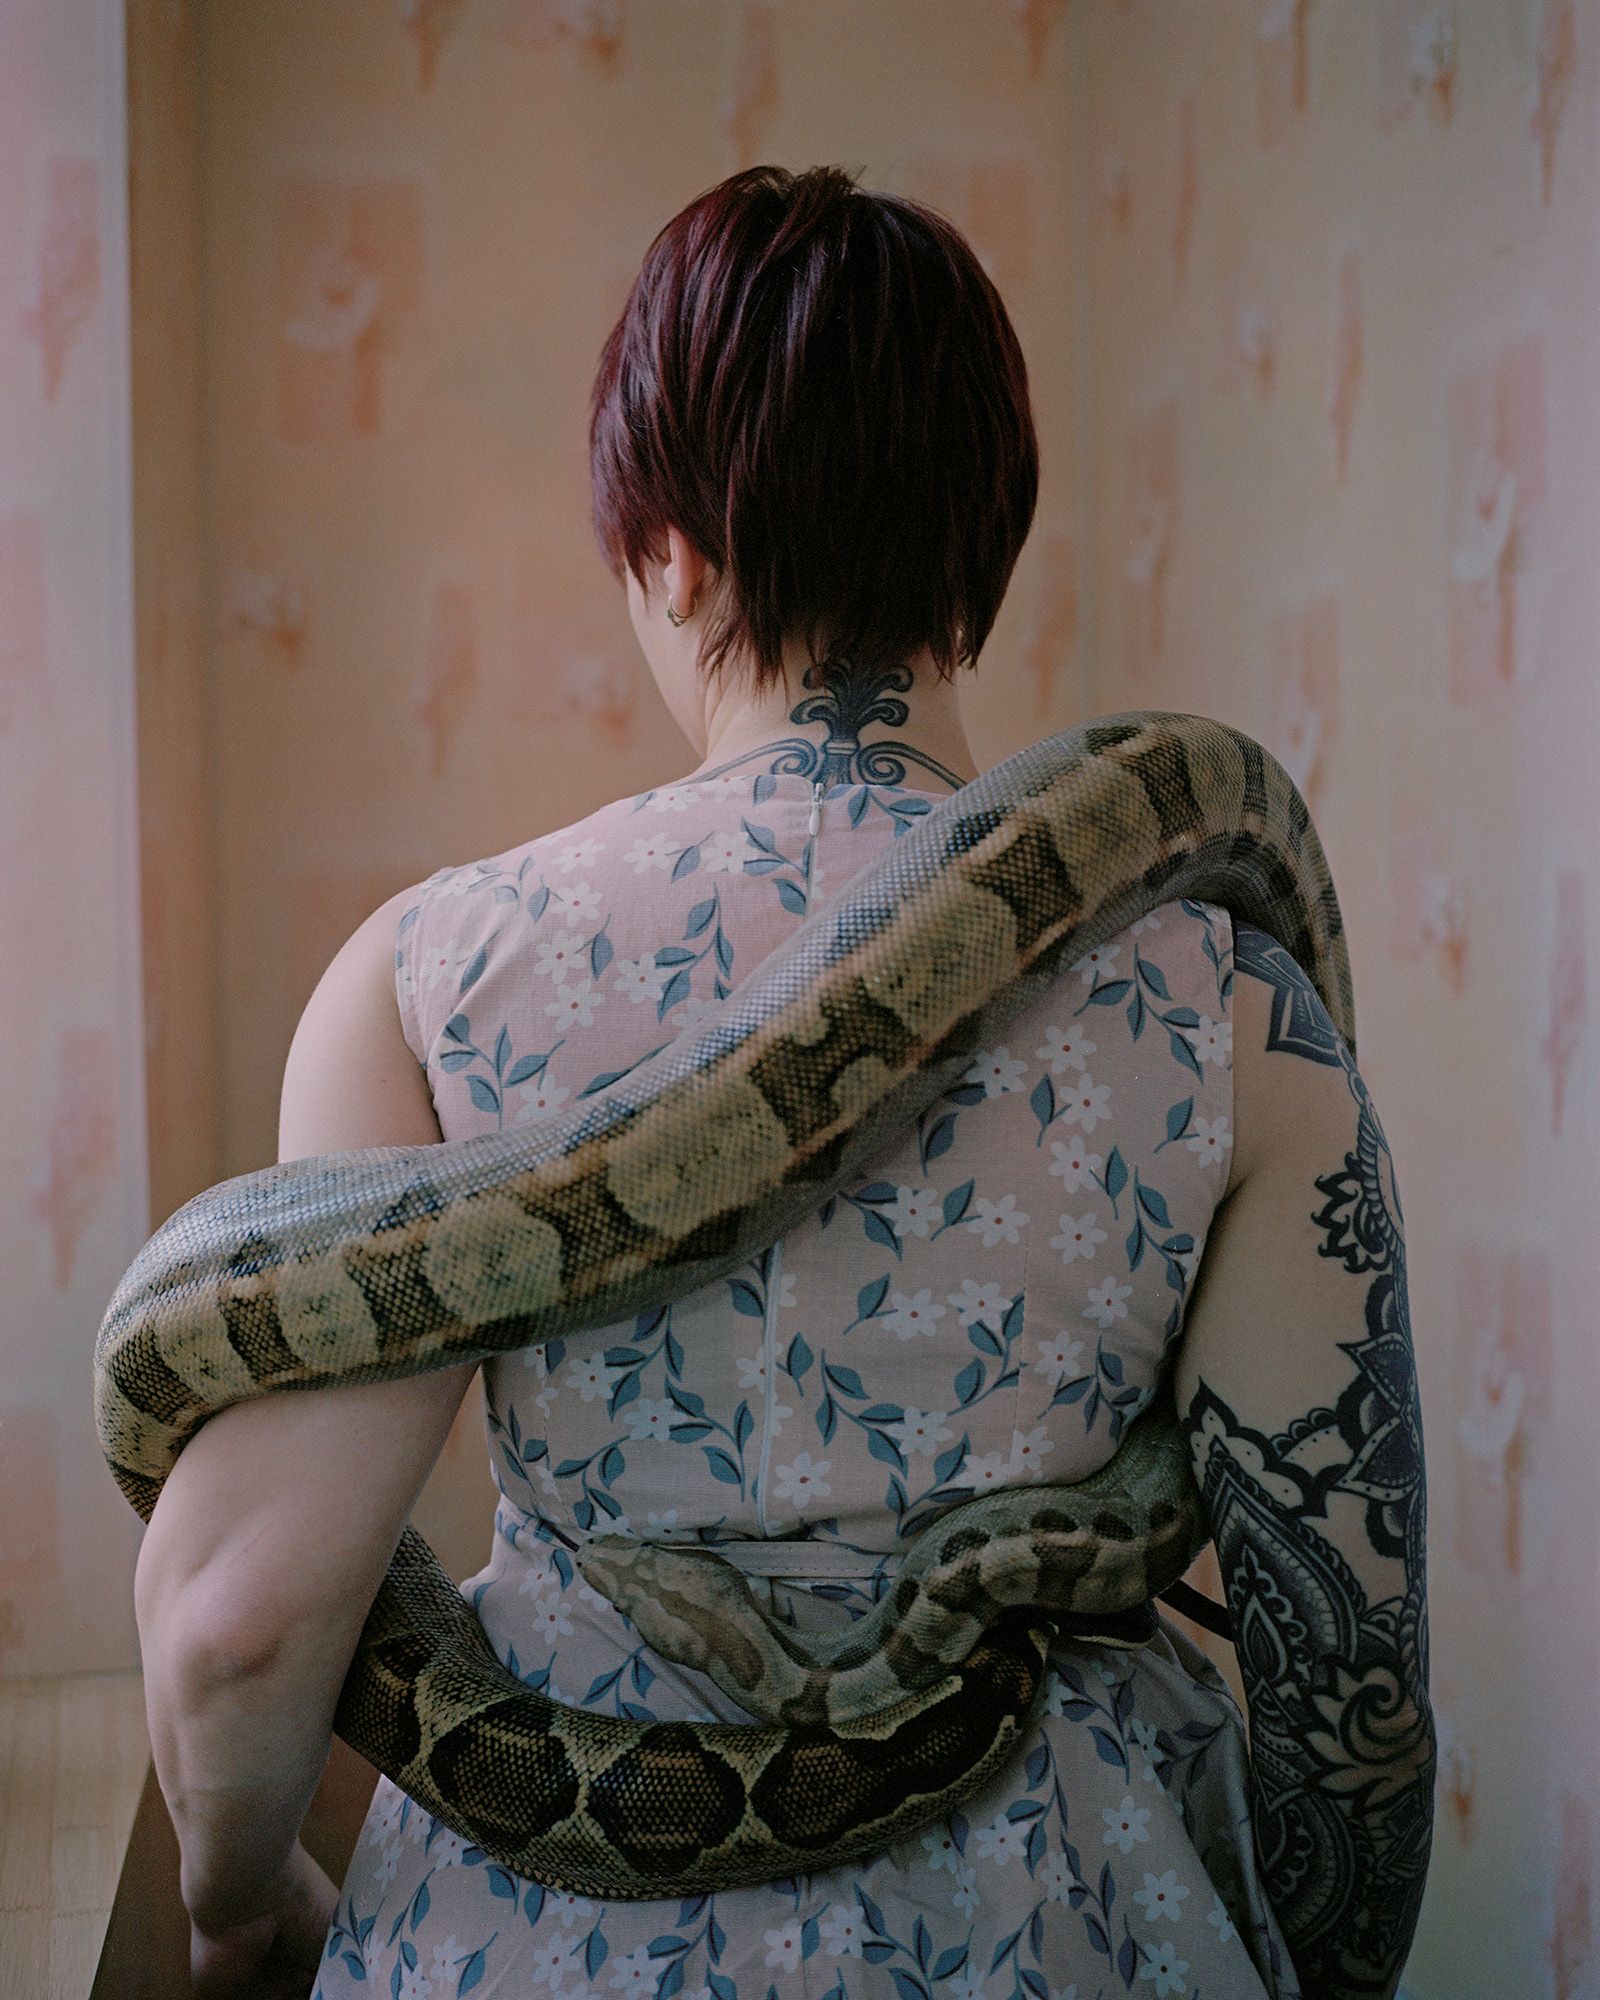 © Tanya Sharapova - Image from the Kolsky photography project